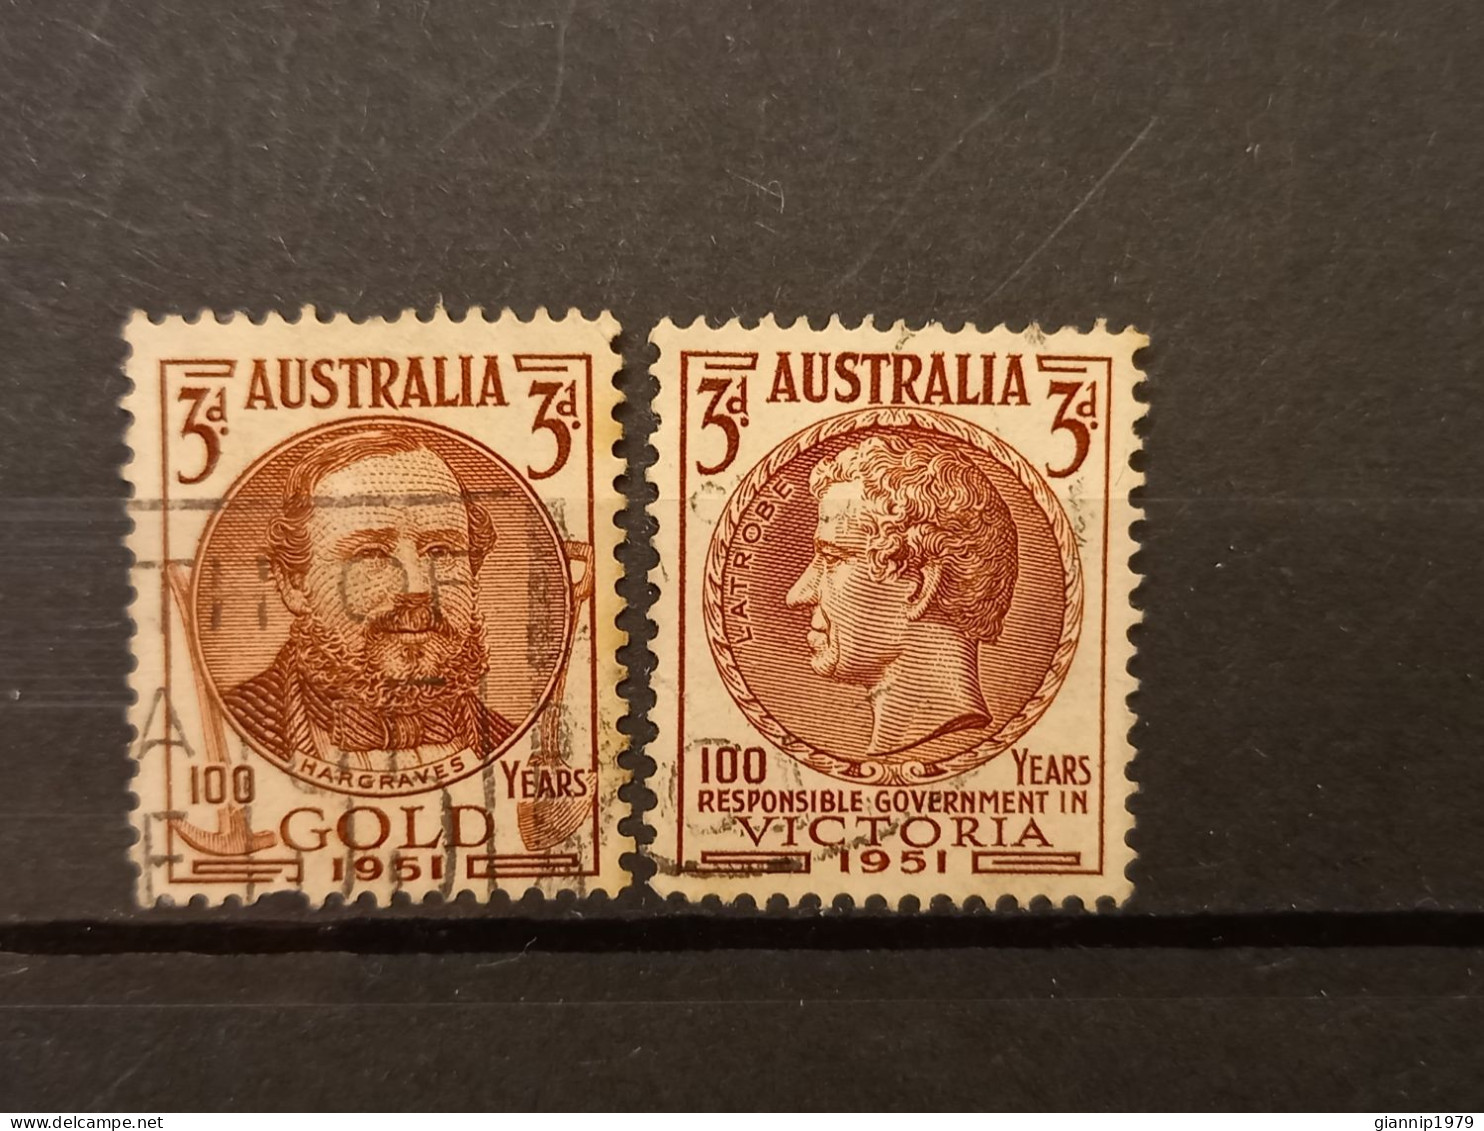 FRANCOBOLLI STAMPS AUSTRALIA AUSTRALIAN 1951 USED SERIE COMPLETE COMPLETA 100 ANNI ANNIVERSARY ORO VICTORIA OBLITERE' - Used Stamps